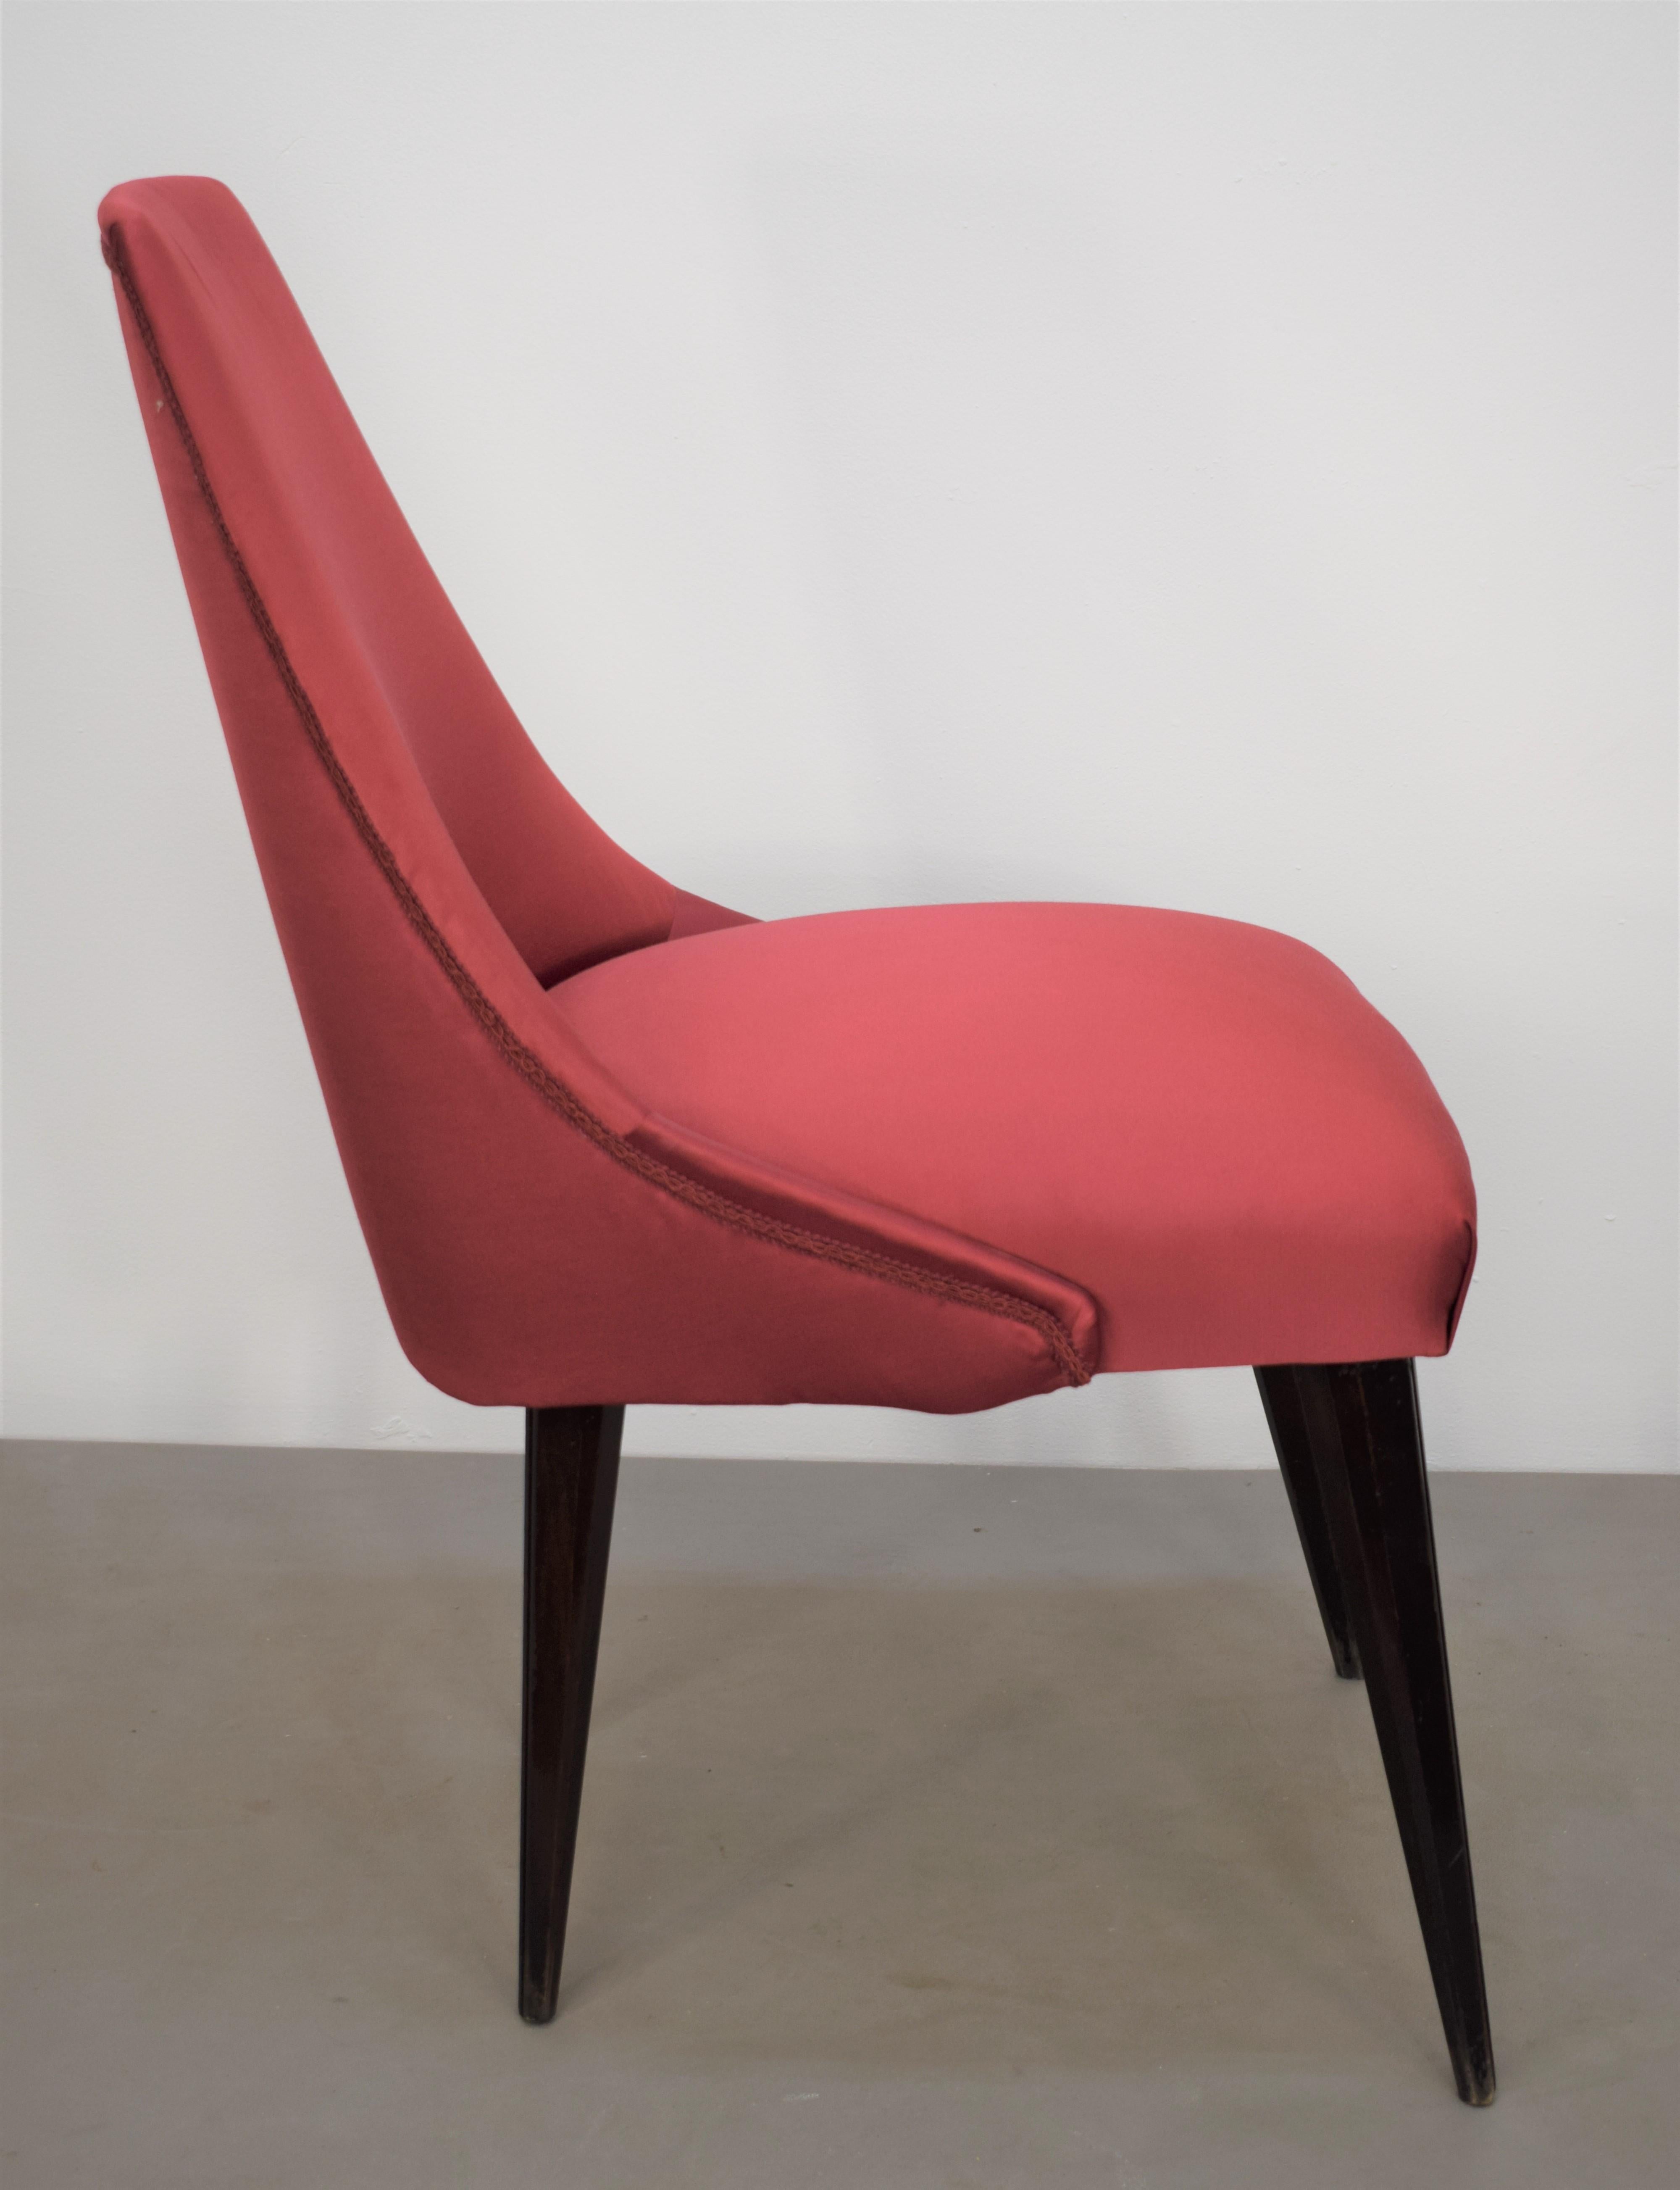 Set of 3 Italian Chairs, Osvaldo Borsani Style, 1960s For Sale 7